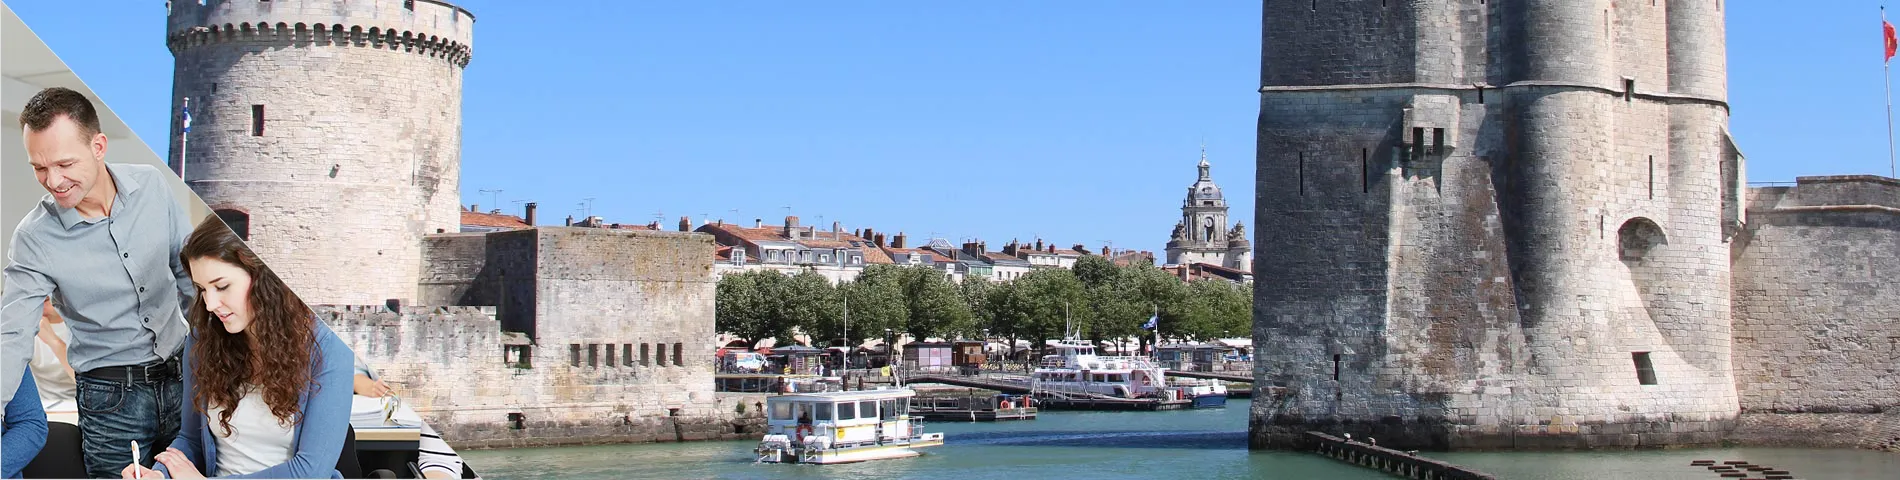 La Rochelle - Combi: Group+Indiv